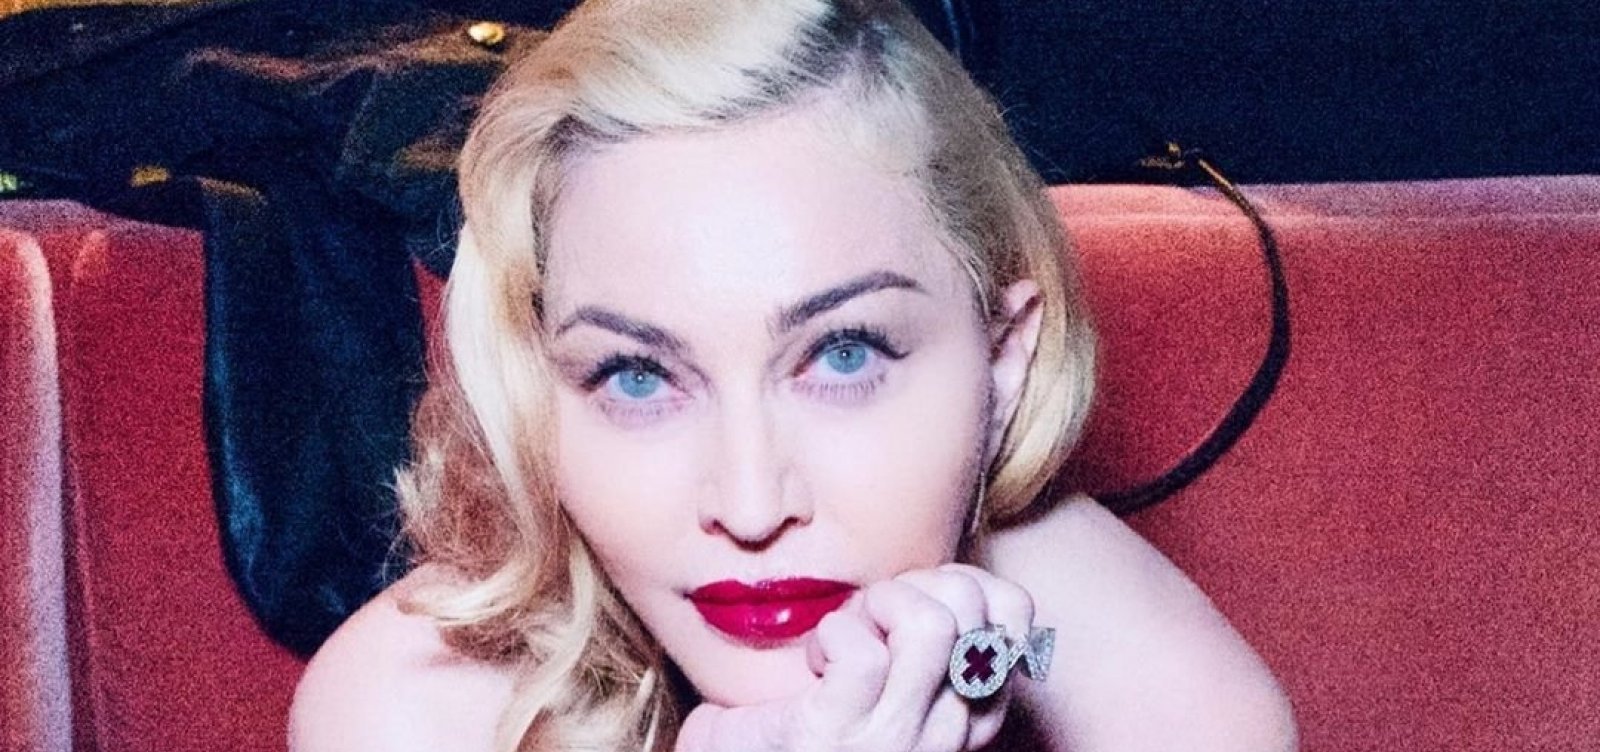 Madonna defende uso de hidroxicloroquina e é censurada pelo Instagram